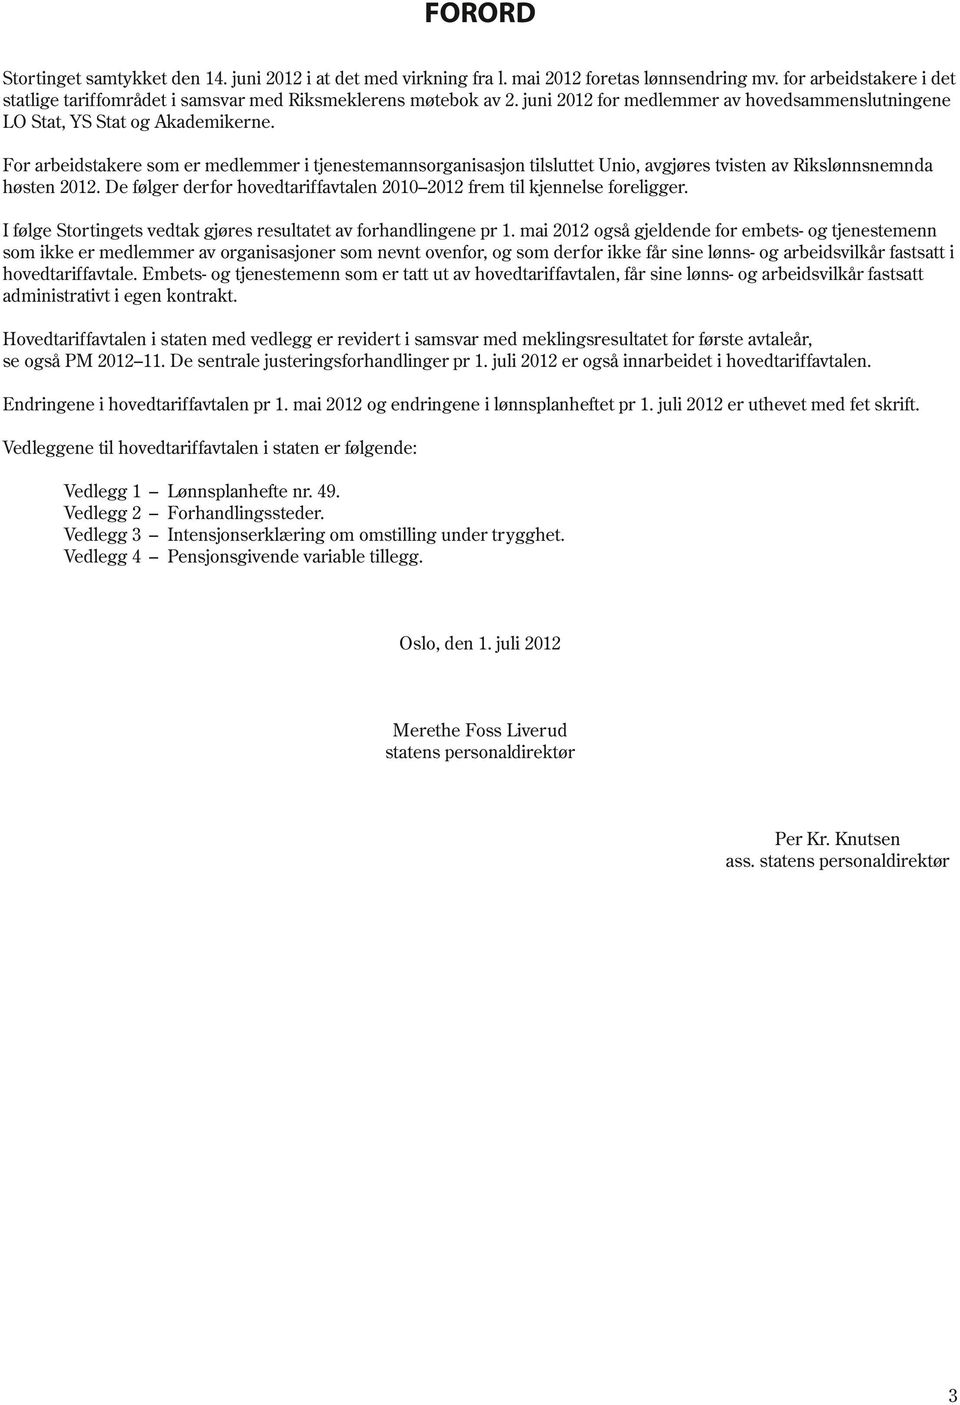 For arbeidstakere som er medlemmer i tjenestemannsorganisasjon tilsluttet Unio, avgjøres tvisten av Rikslønnsnemnda høsten 2012.